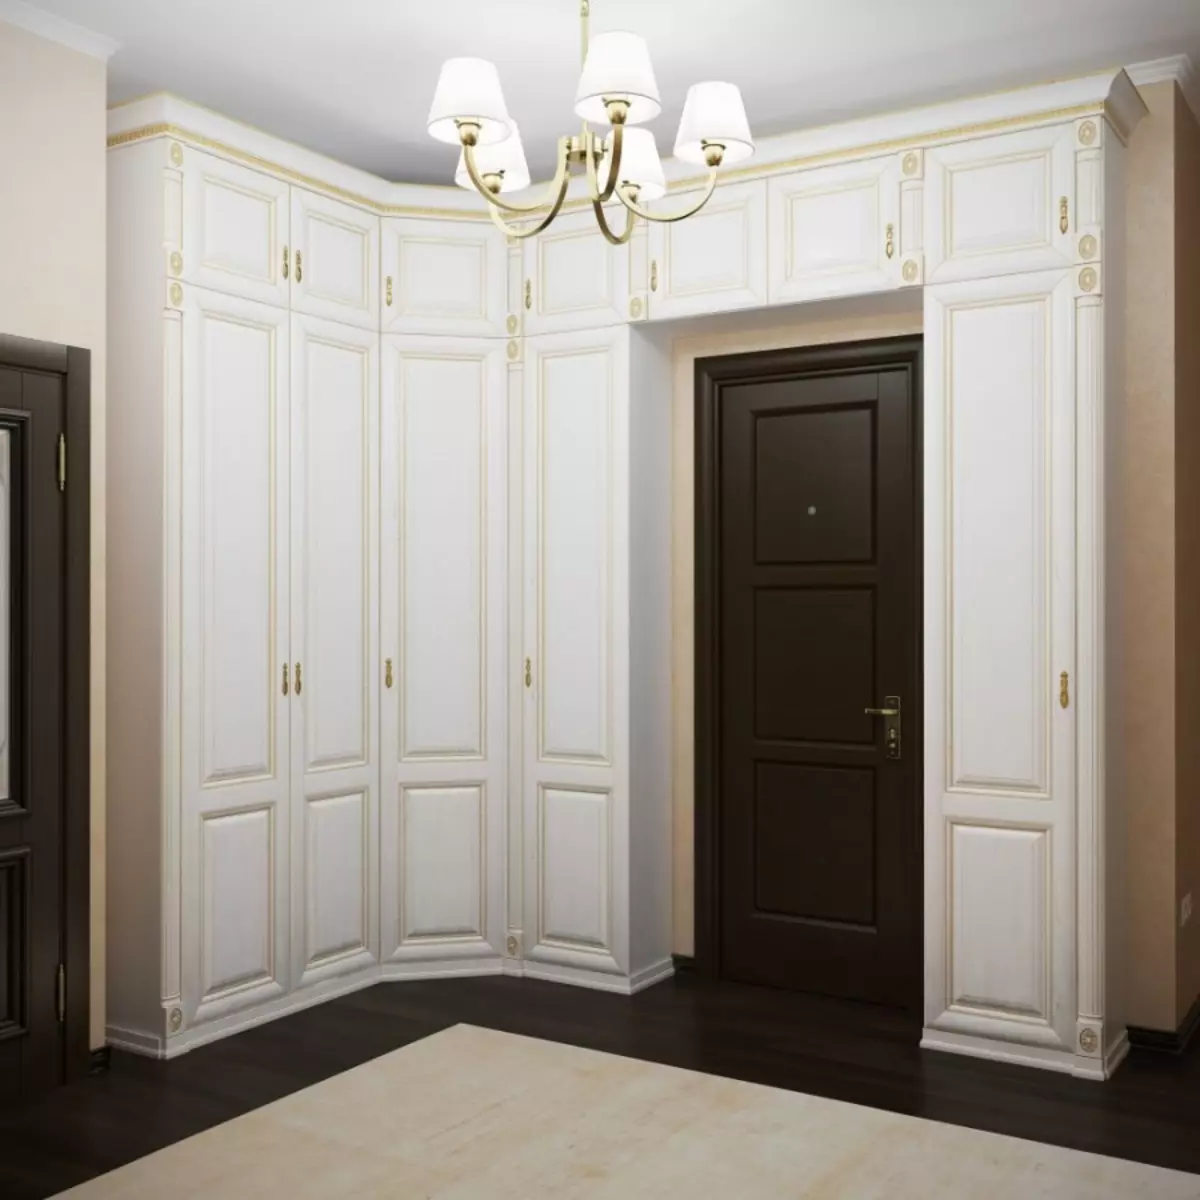 ตู้สวิงในห้องโถง (57 รูป): รีวิวตู้ที่มีประตูแกว่งและมีชั้นลอยอยู่ในทางเดินการออกแบบอาคาร 9161_41